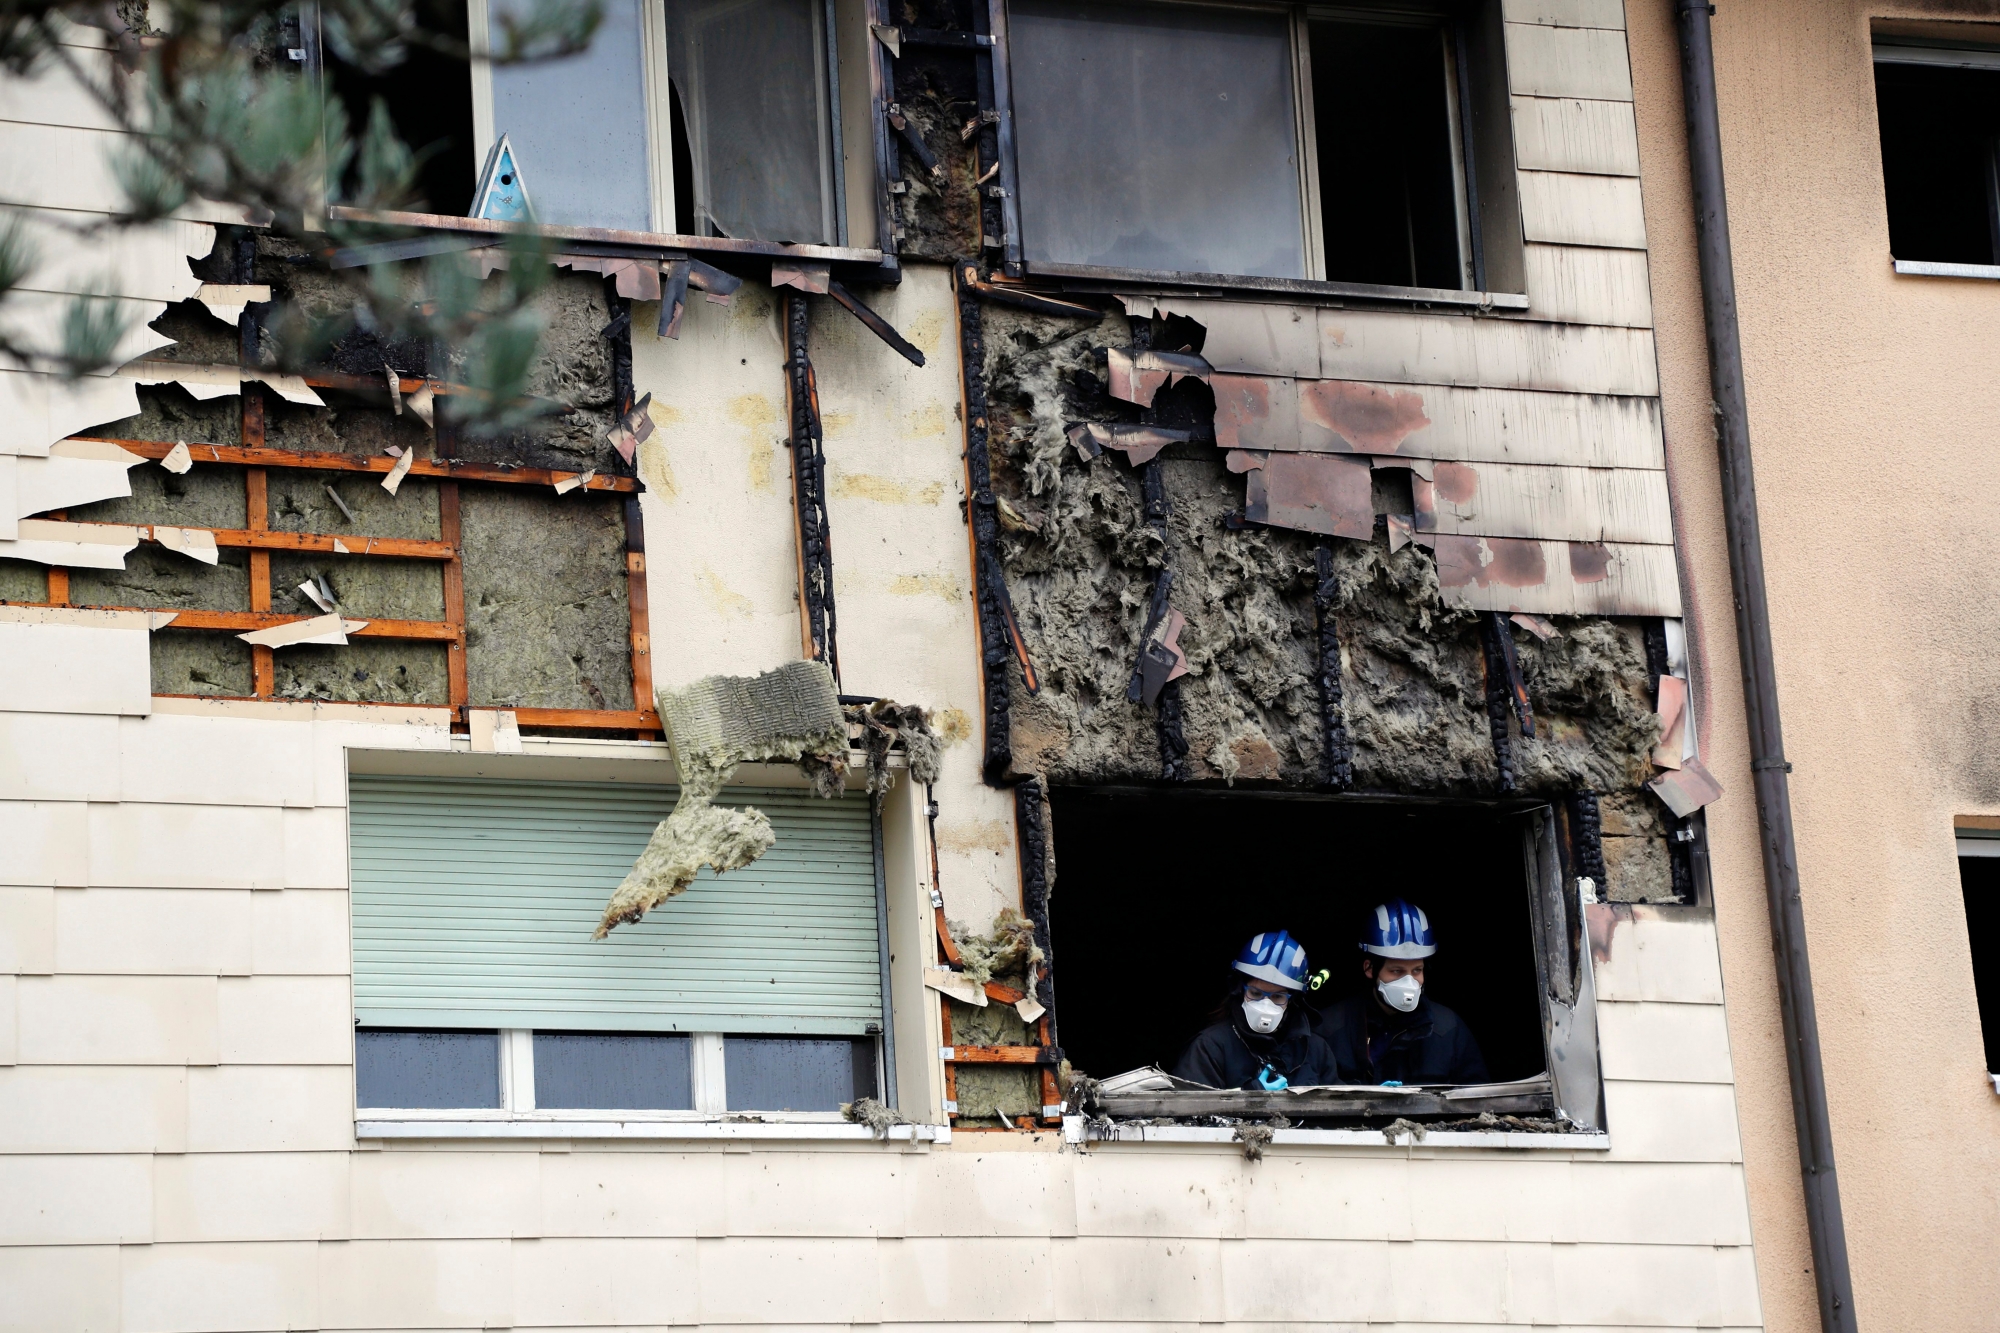 Incendie dans un immeuble de la Rue du Voirnet à Delémont, 18 février 2018. En bas à droite, la police scientifique en intervention. (Roger Meier)